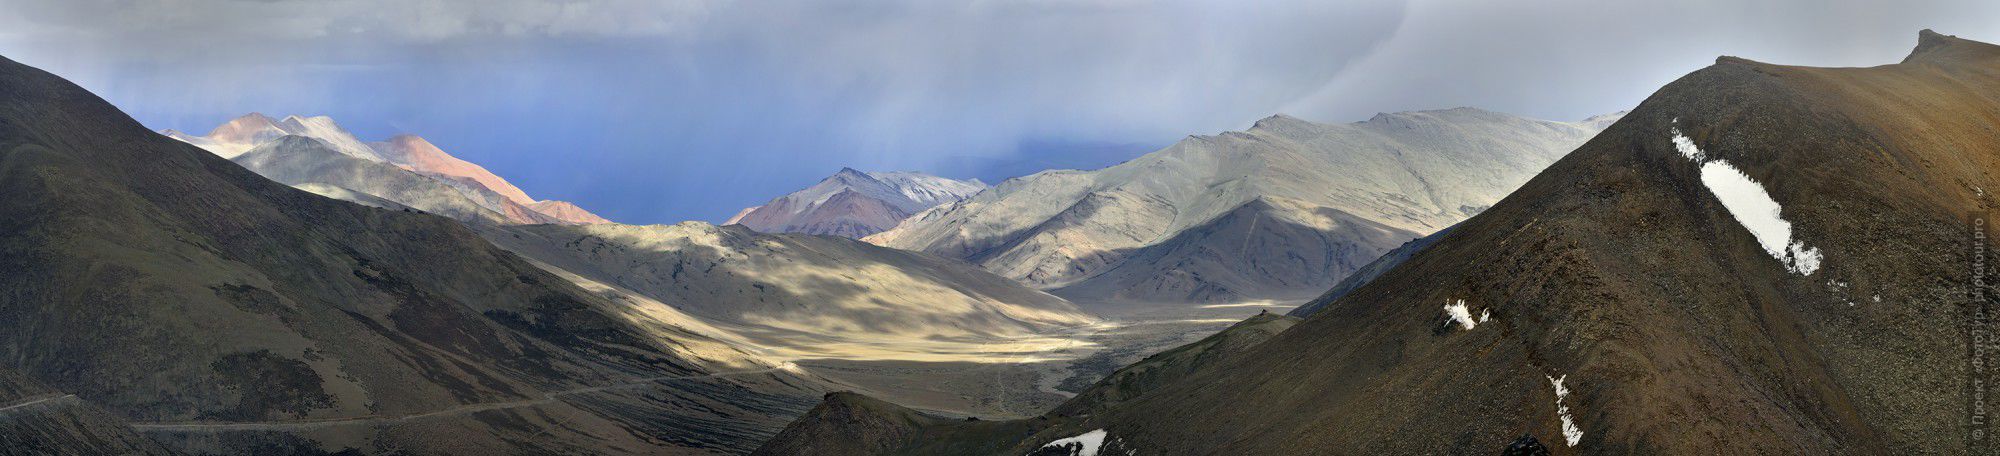 Пыльная Долина Рупшу, Лех-Манальское Шоссе. Фототур в Долину Спити из Леха,  Малый Тибет, Индия.